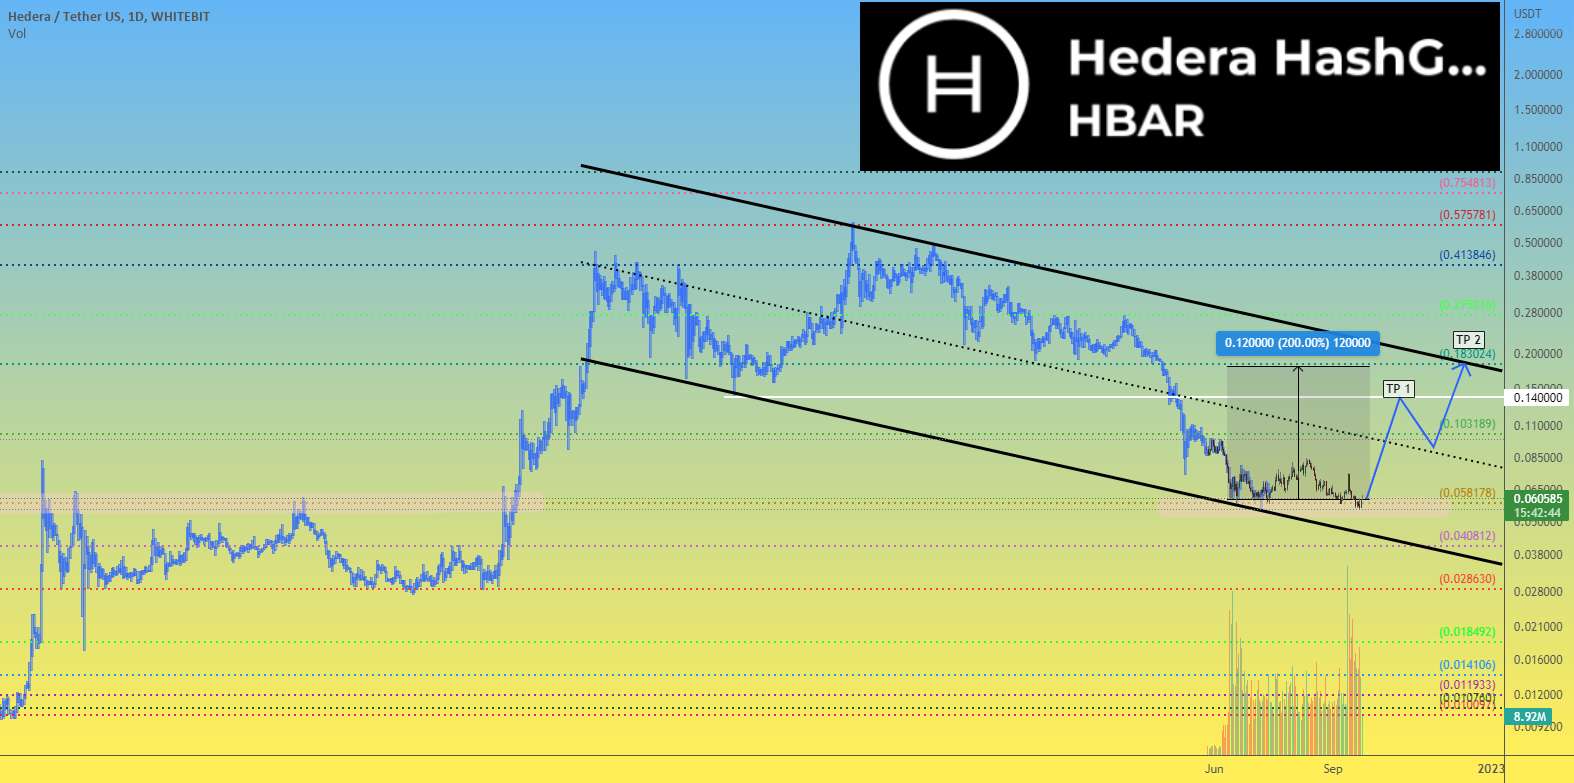 قیمت HEDERA HBAR می تواند +200٪ رشد کند